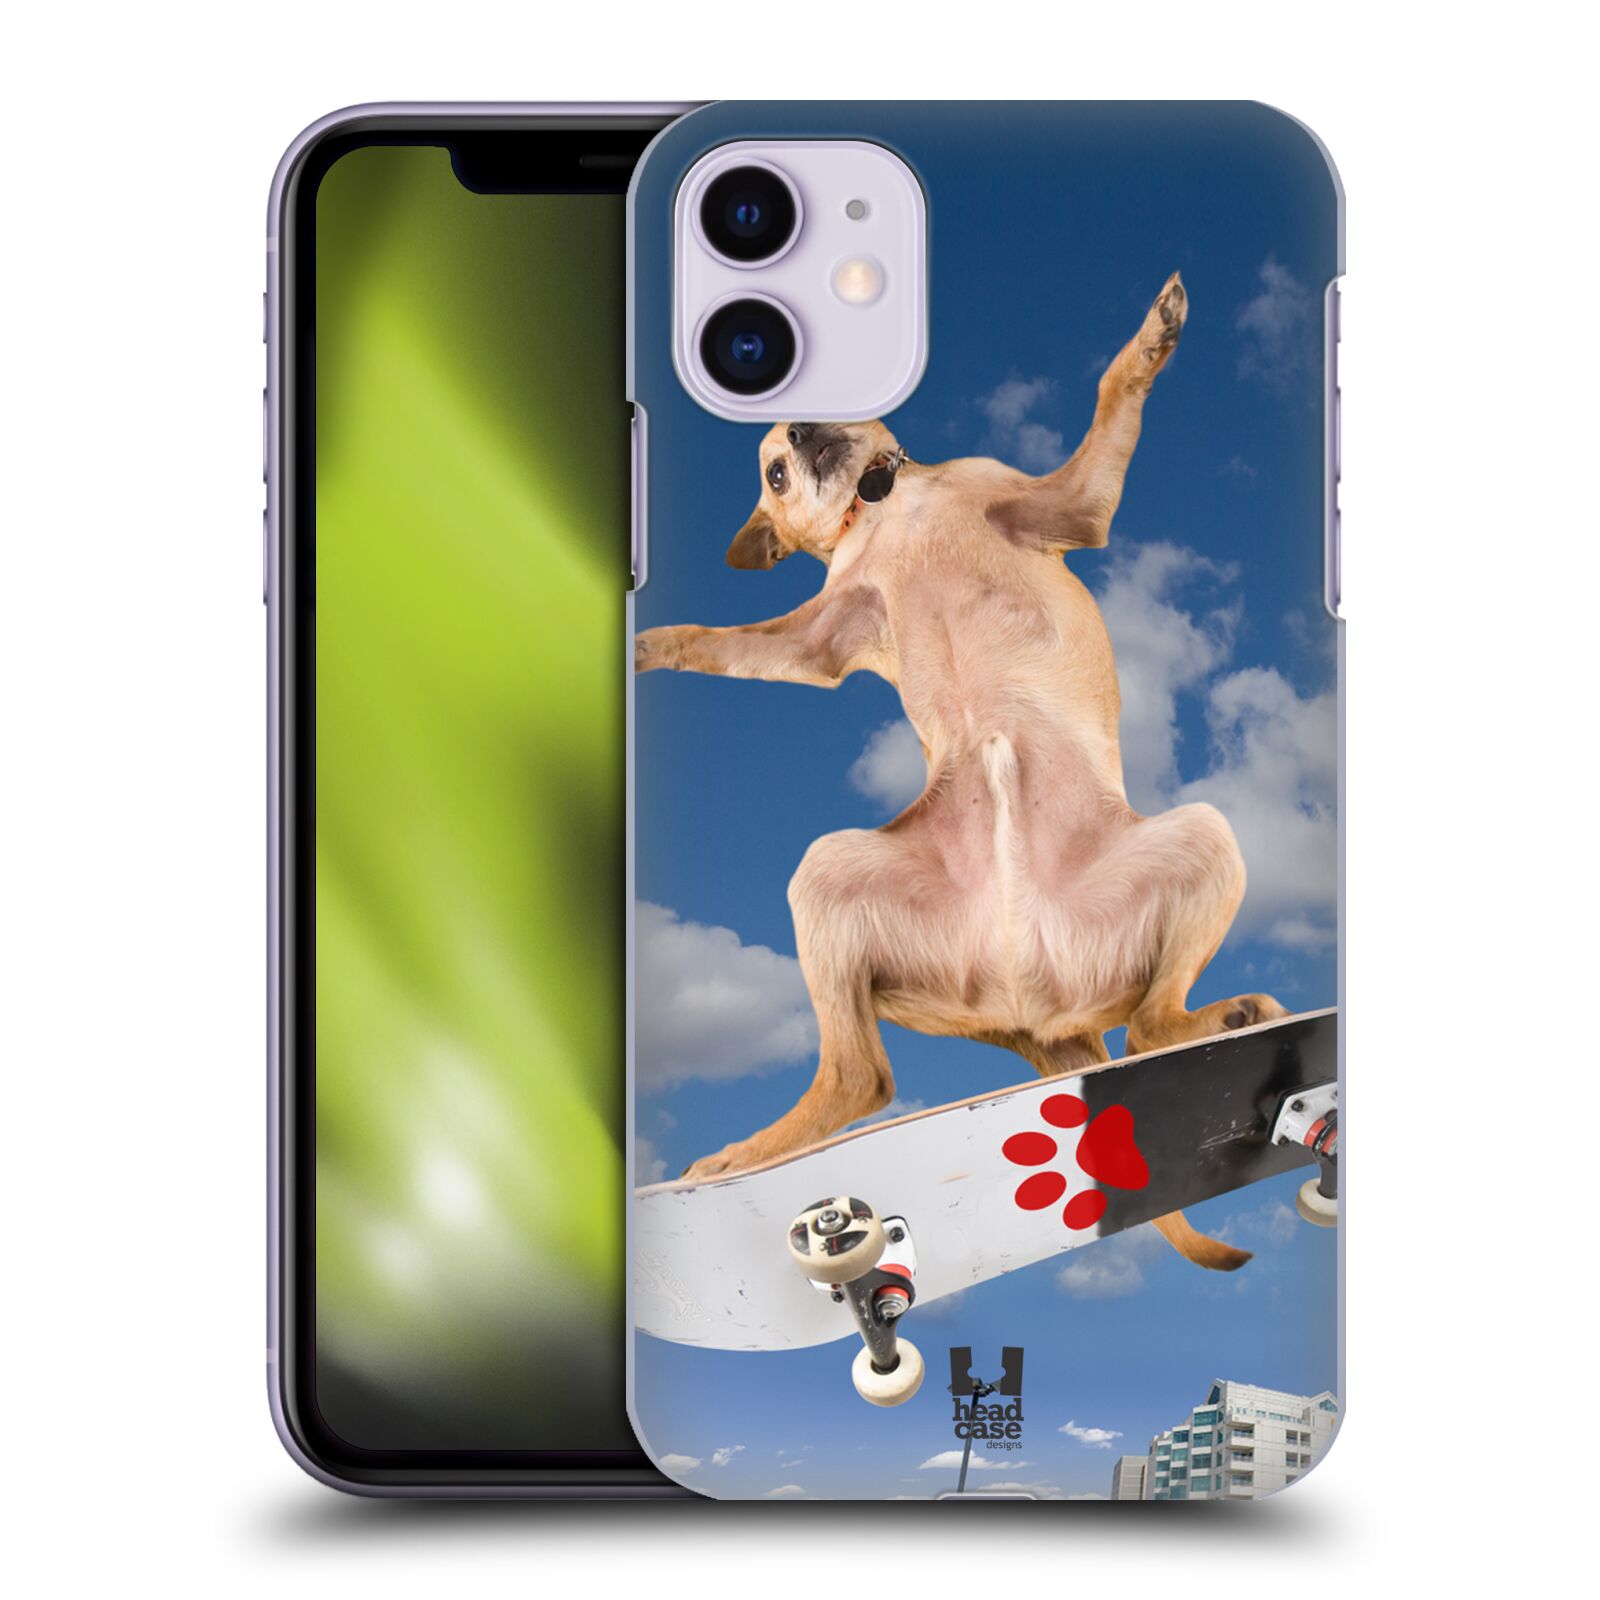 Pouzdro na mobil Apple Iphone 11 - HEAD CASE - vzor Legrační zvířátka pejsek skateboard